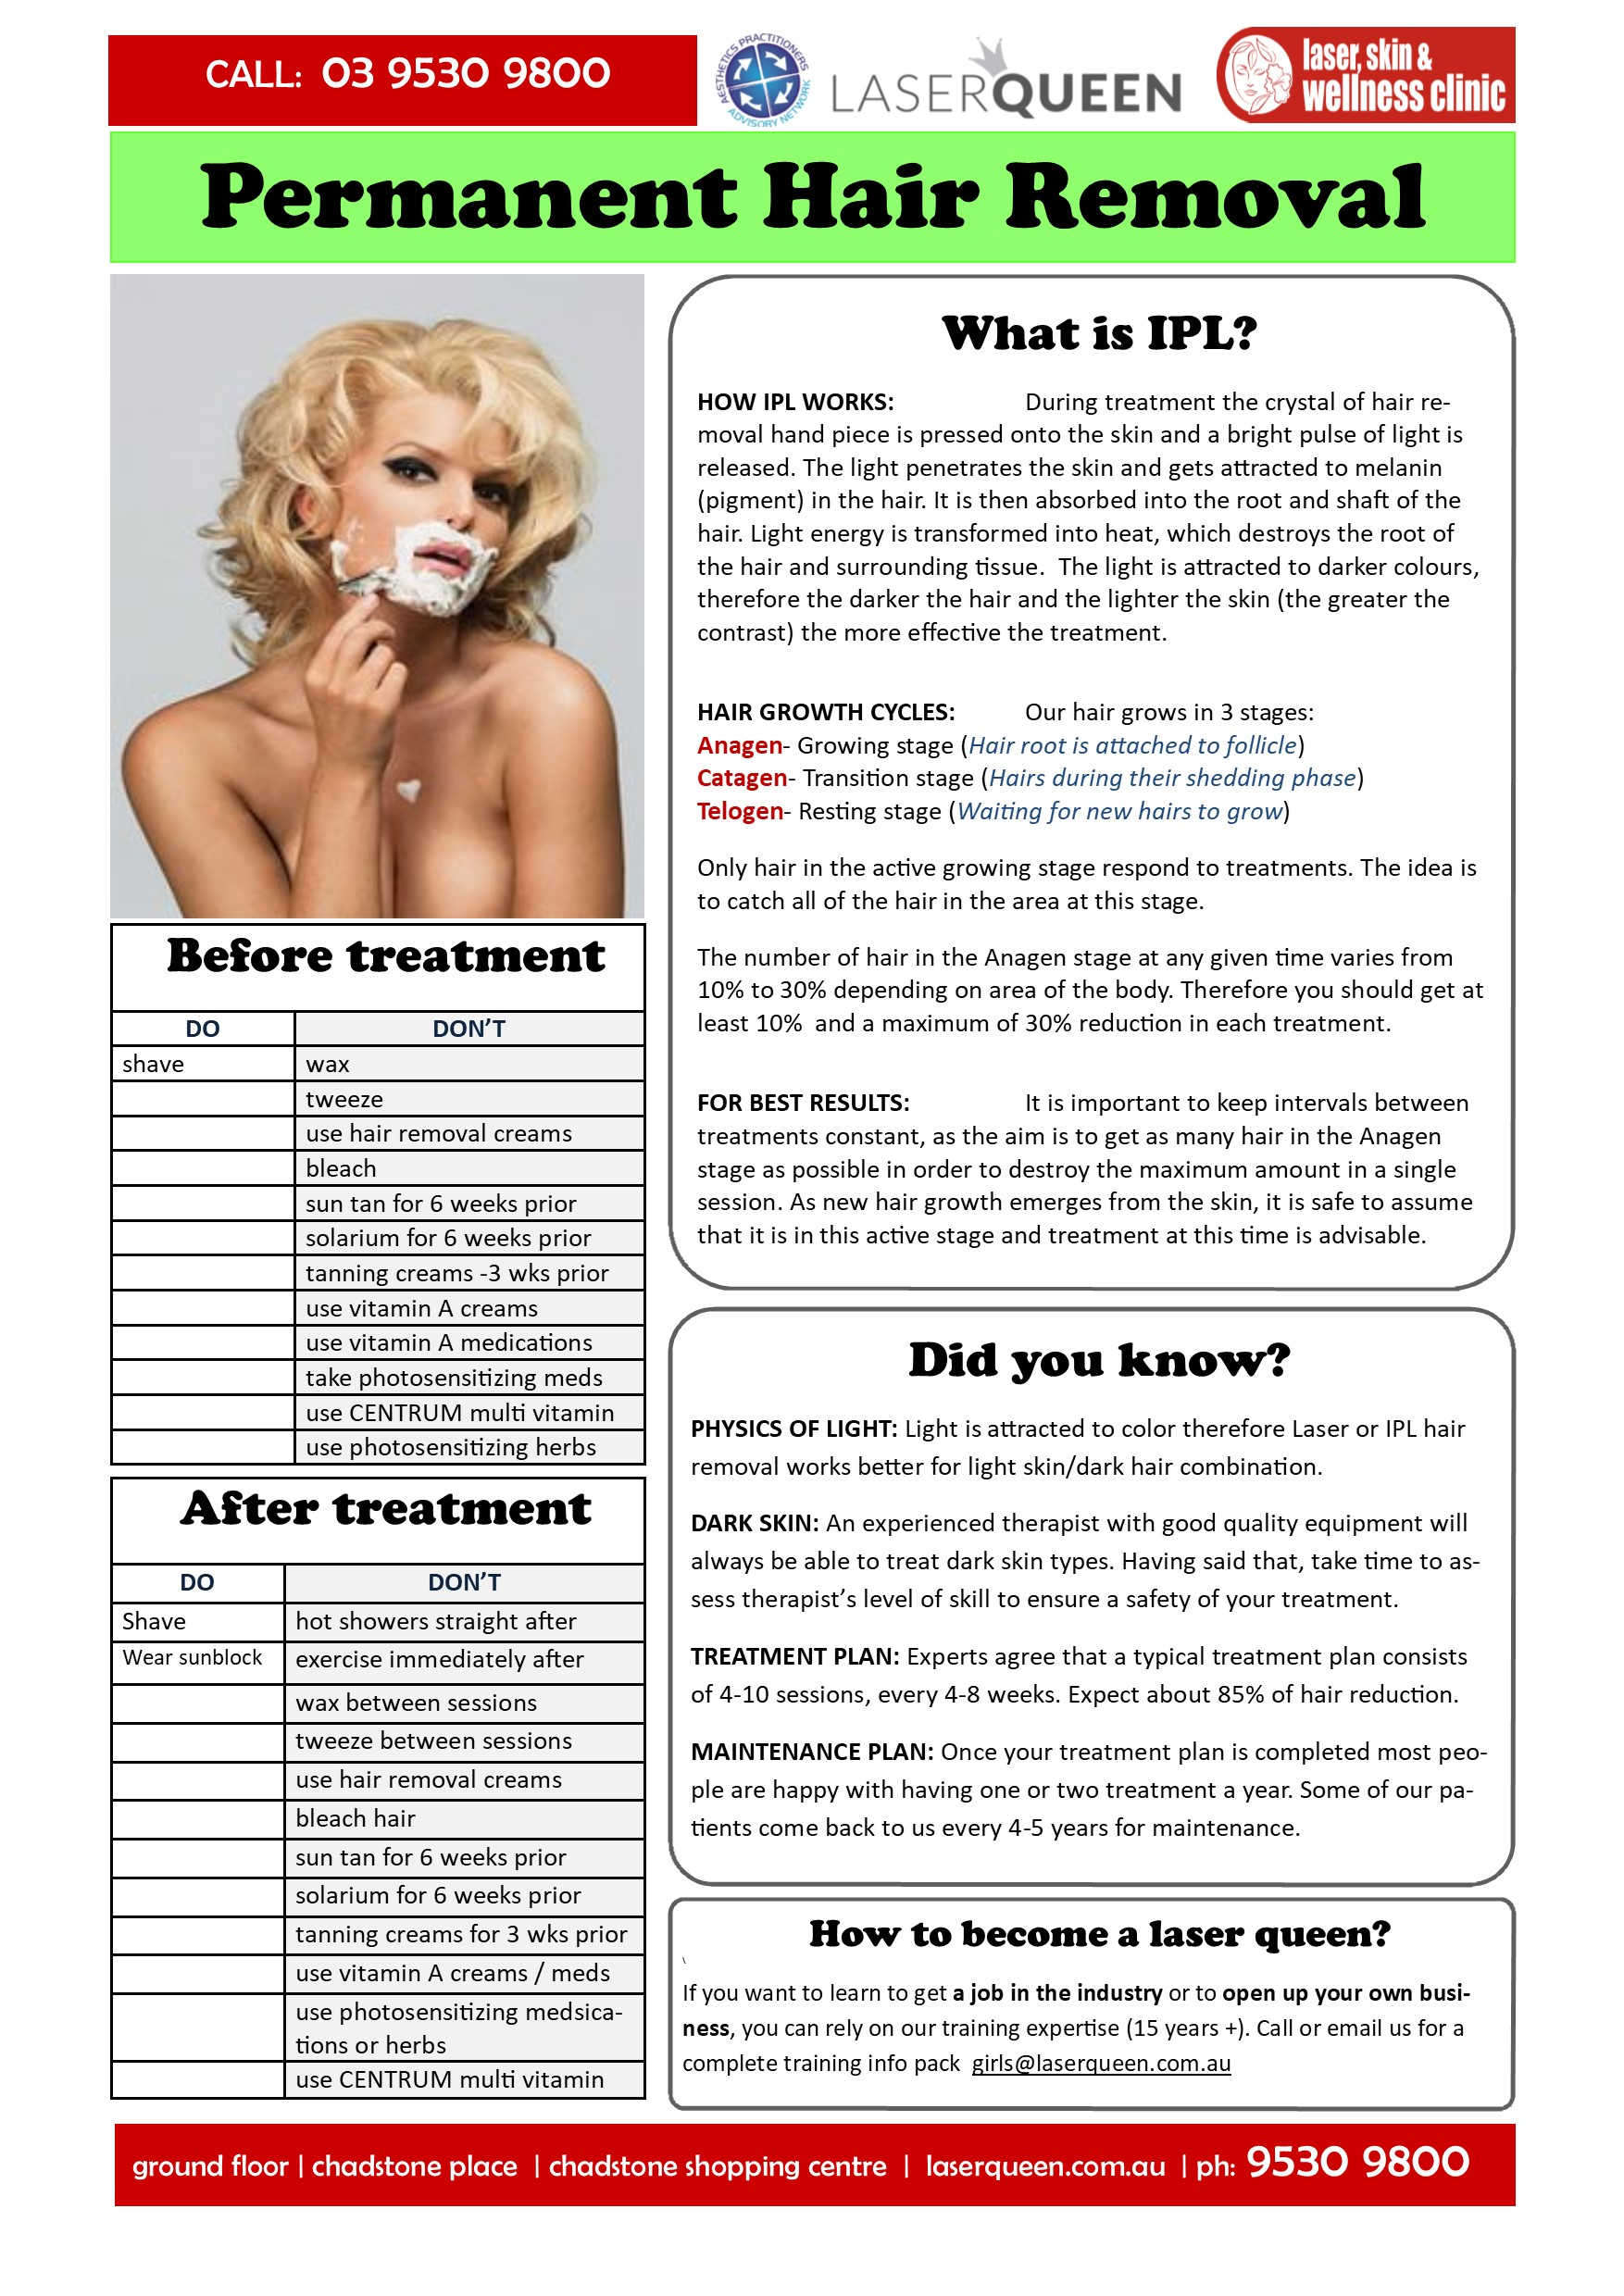 ipl hair removal factsheet